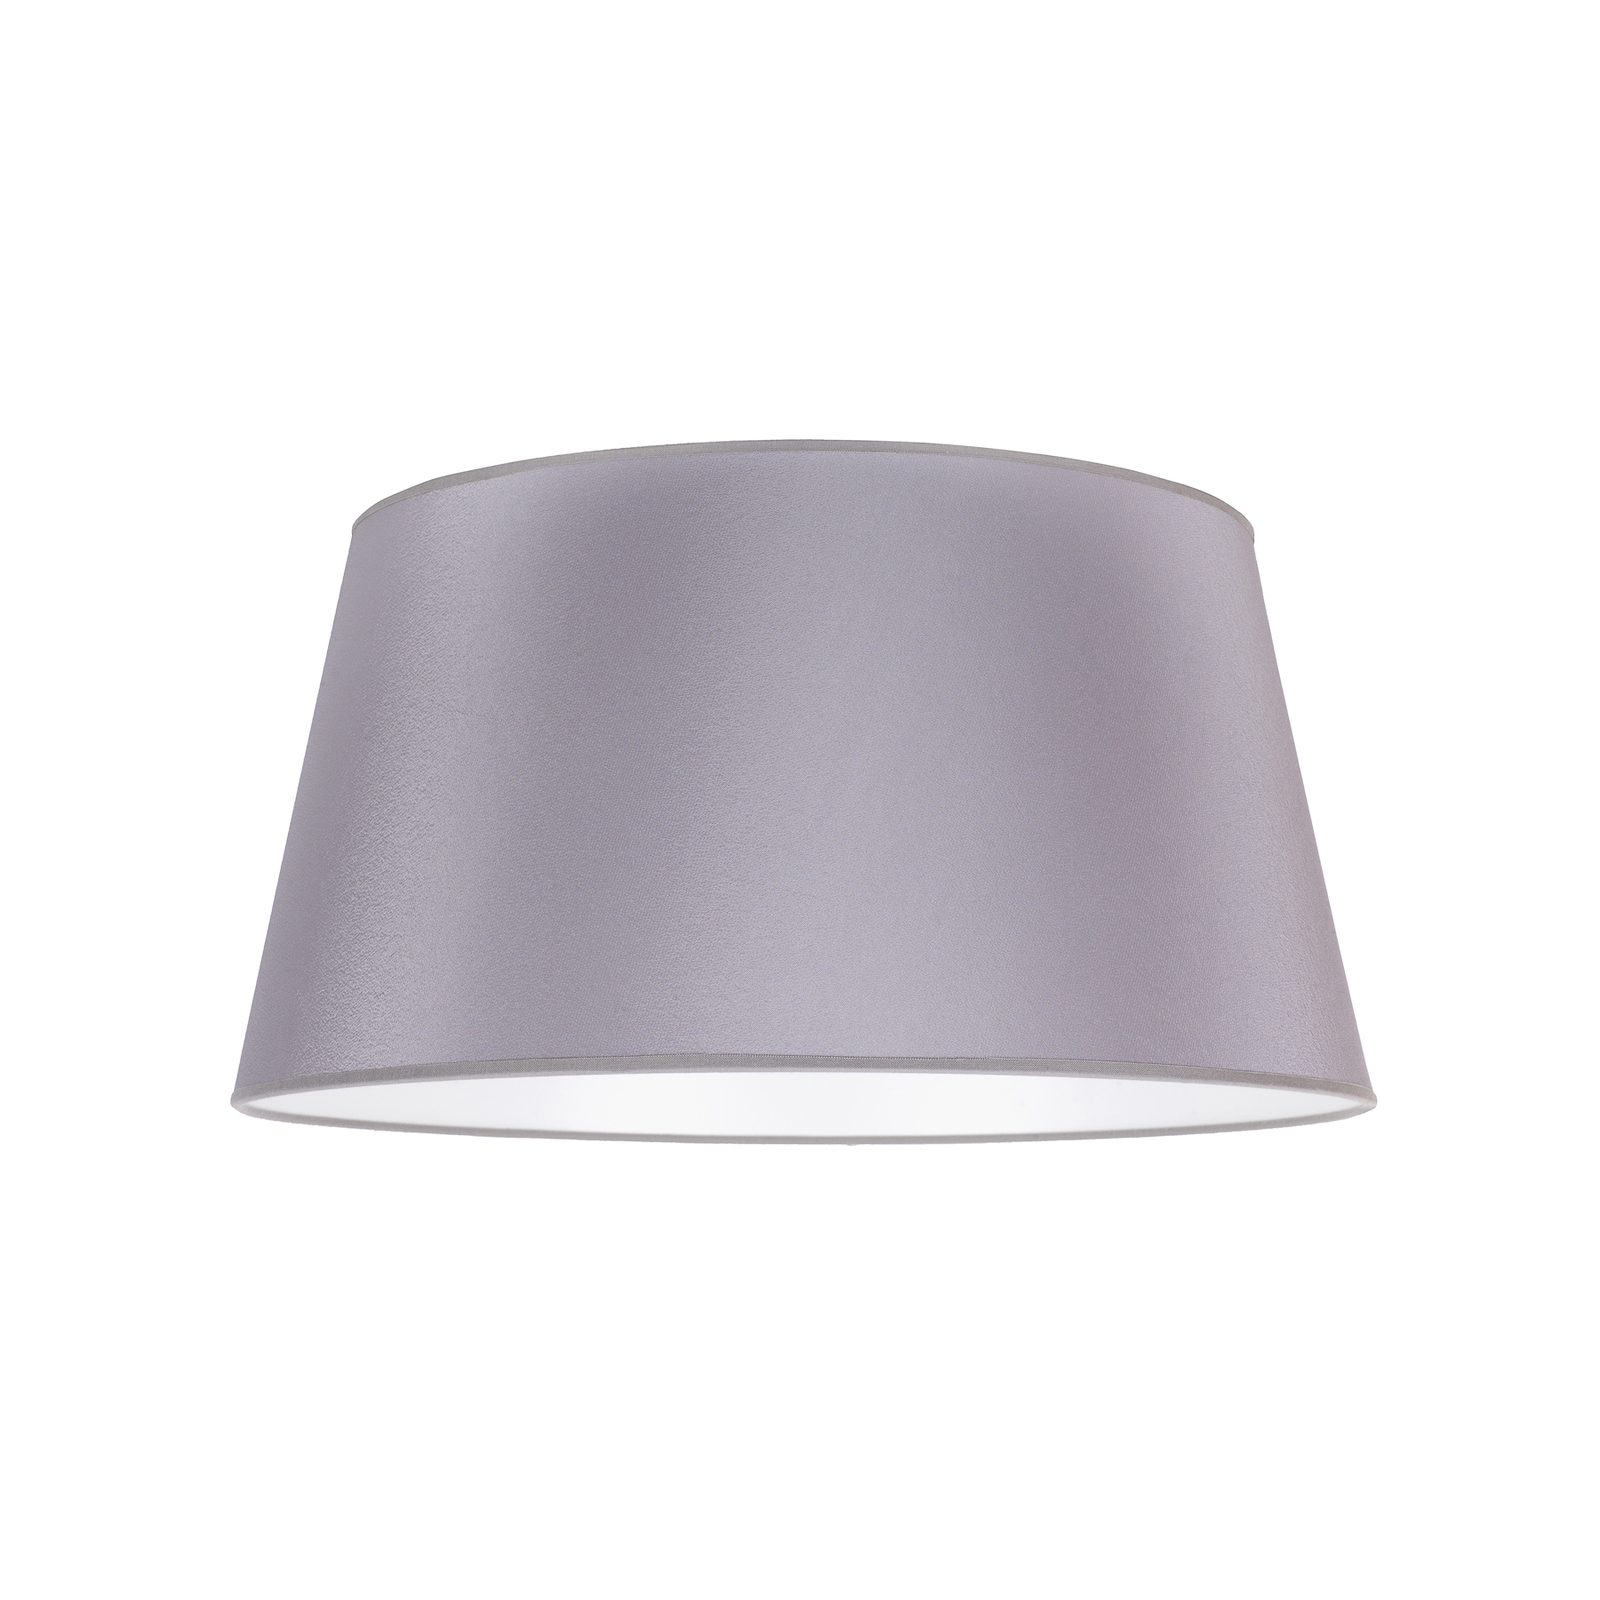 Cone lampshade height 25.5 cm, grey/white chintz